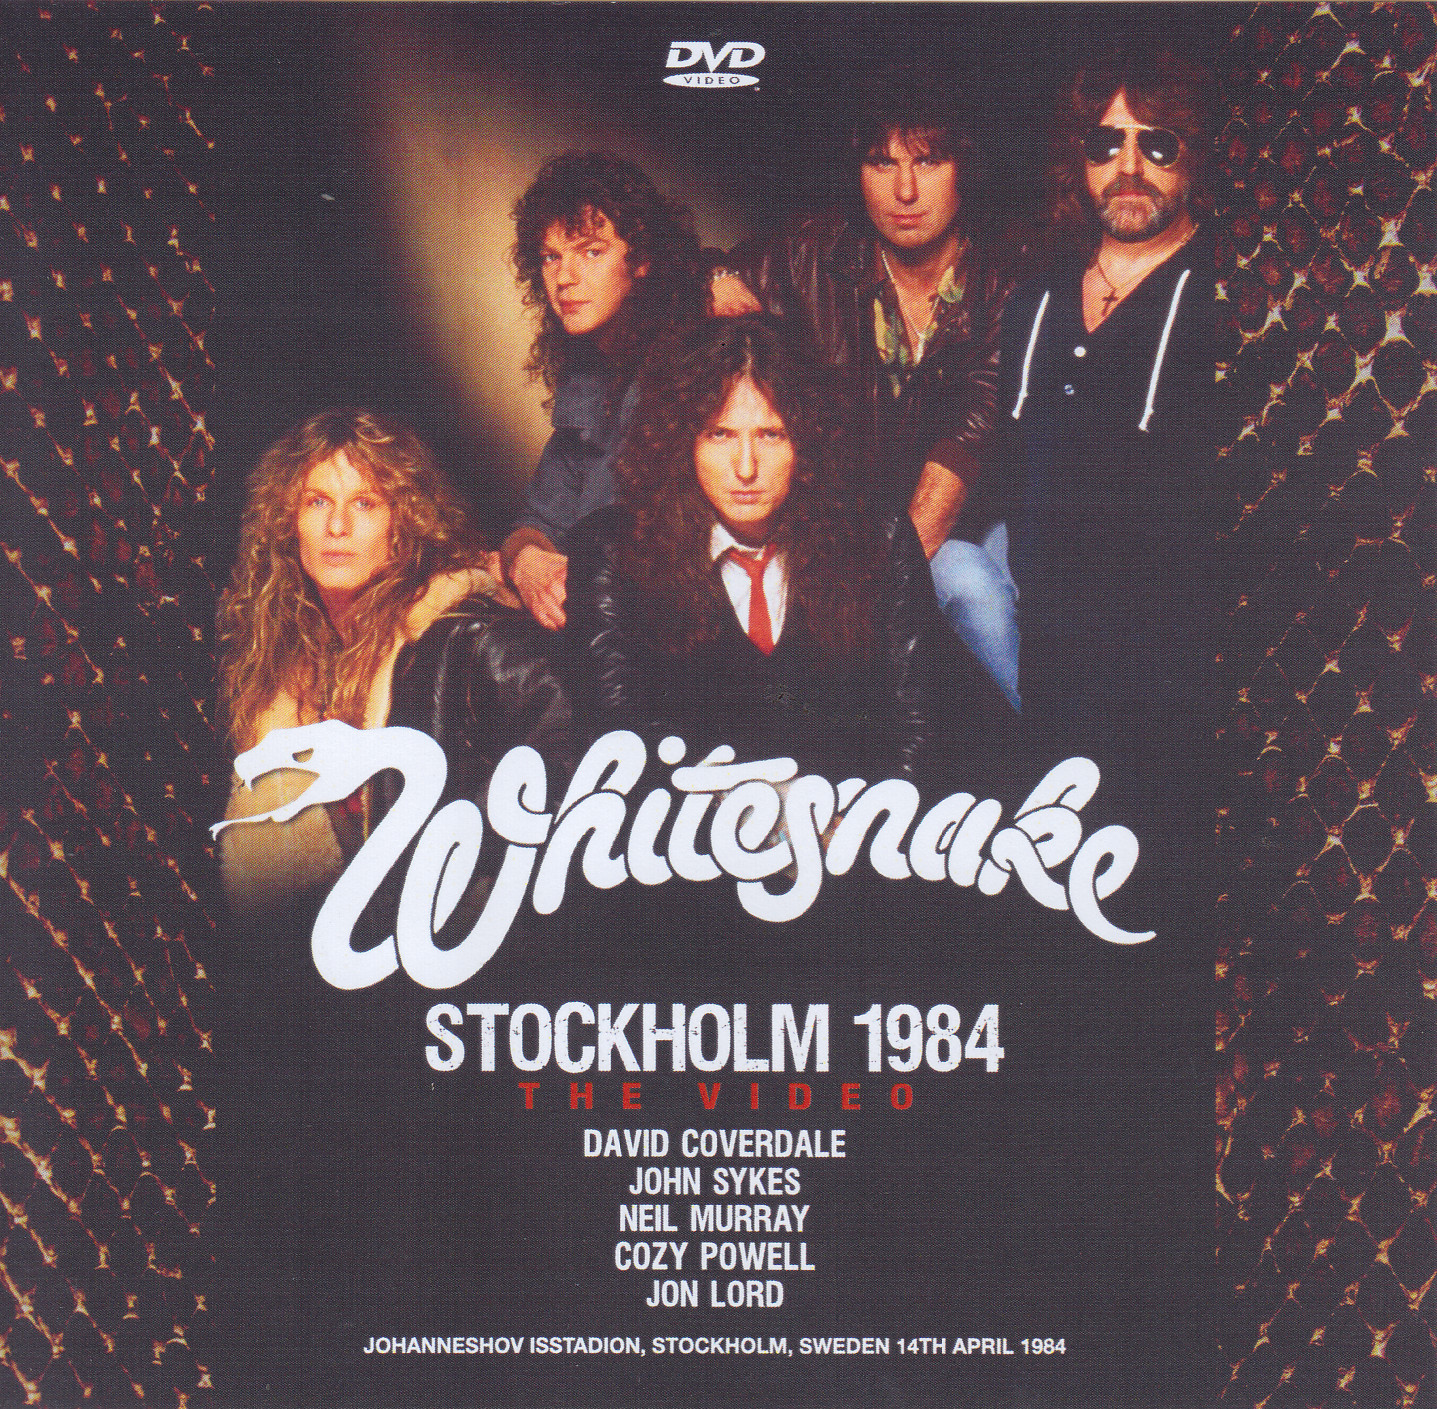 Whitesnake / Definitive Stockholm 1984 / 2CD+1Bonus DVDR – GiGinJapan